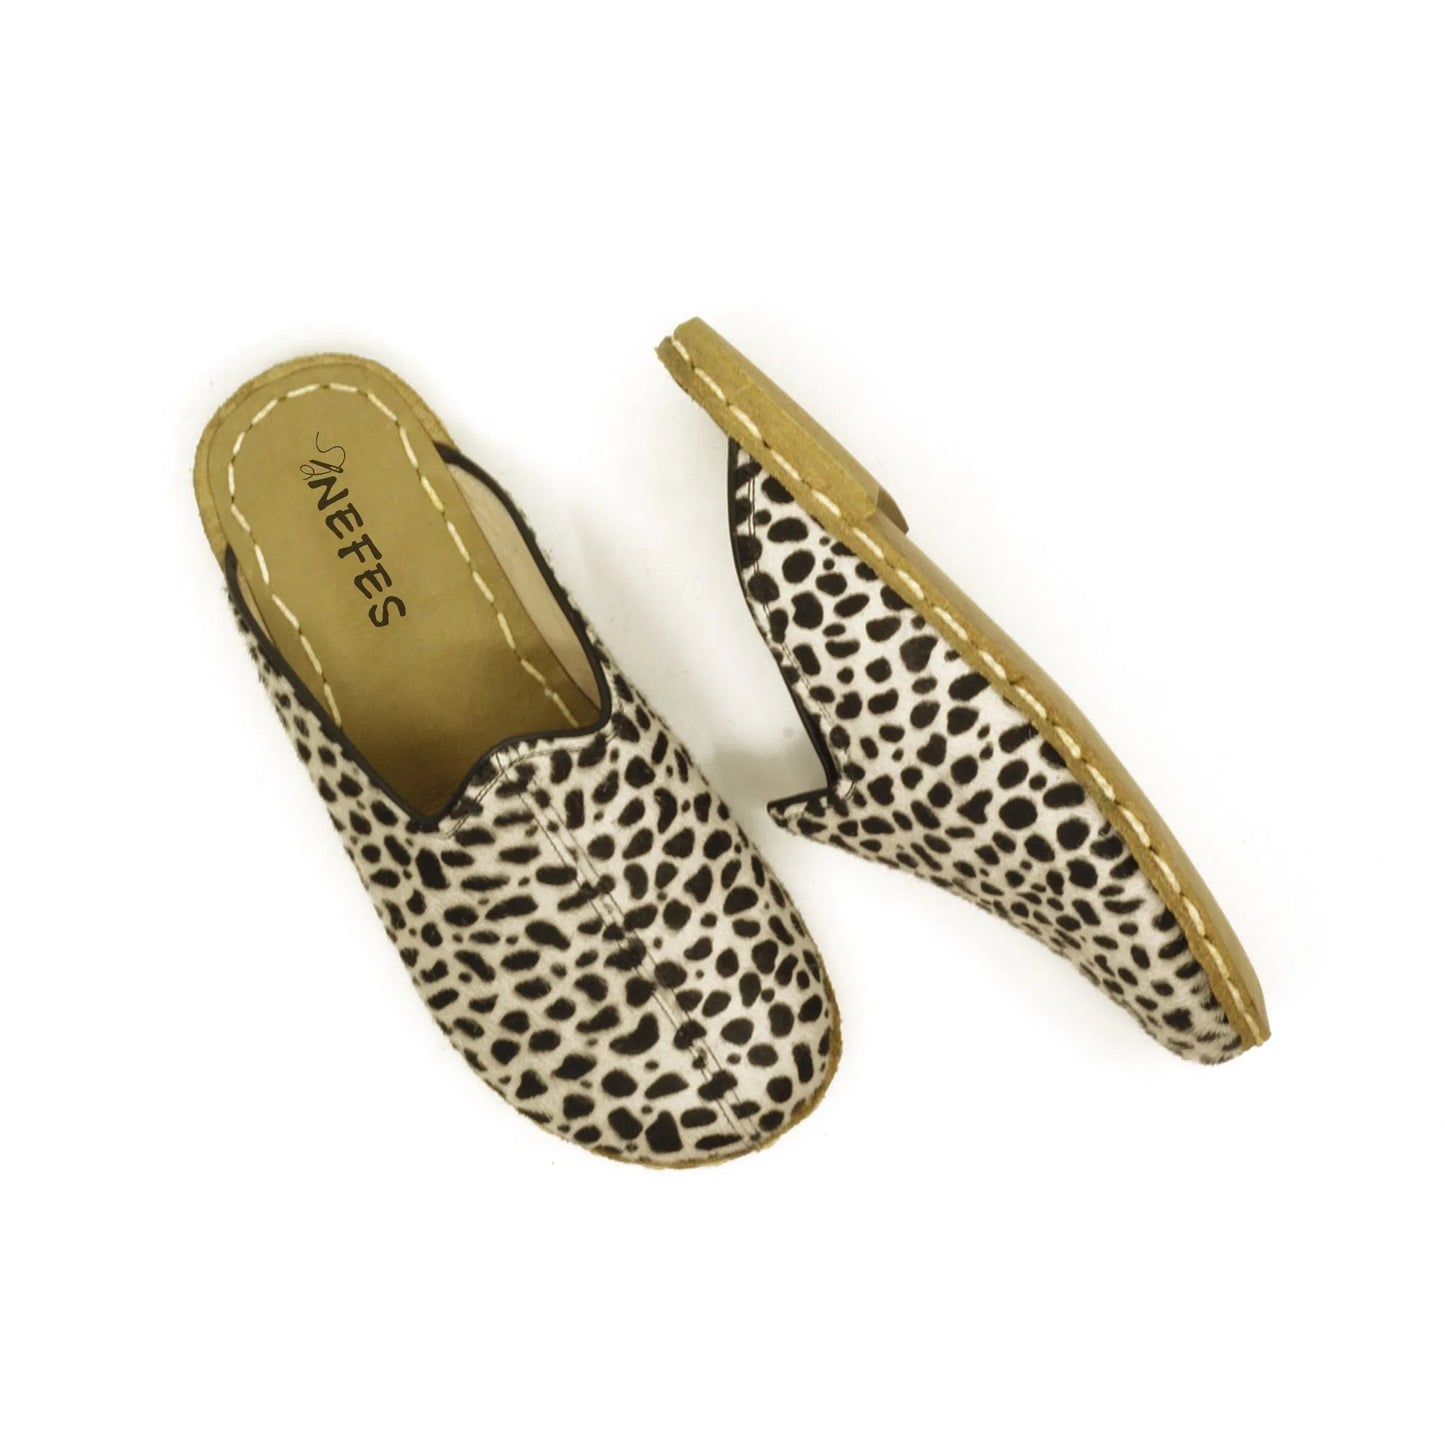 Leopard Hairy Leather Slippers Barefoot-nefesshoes-4-Nefes Shoes